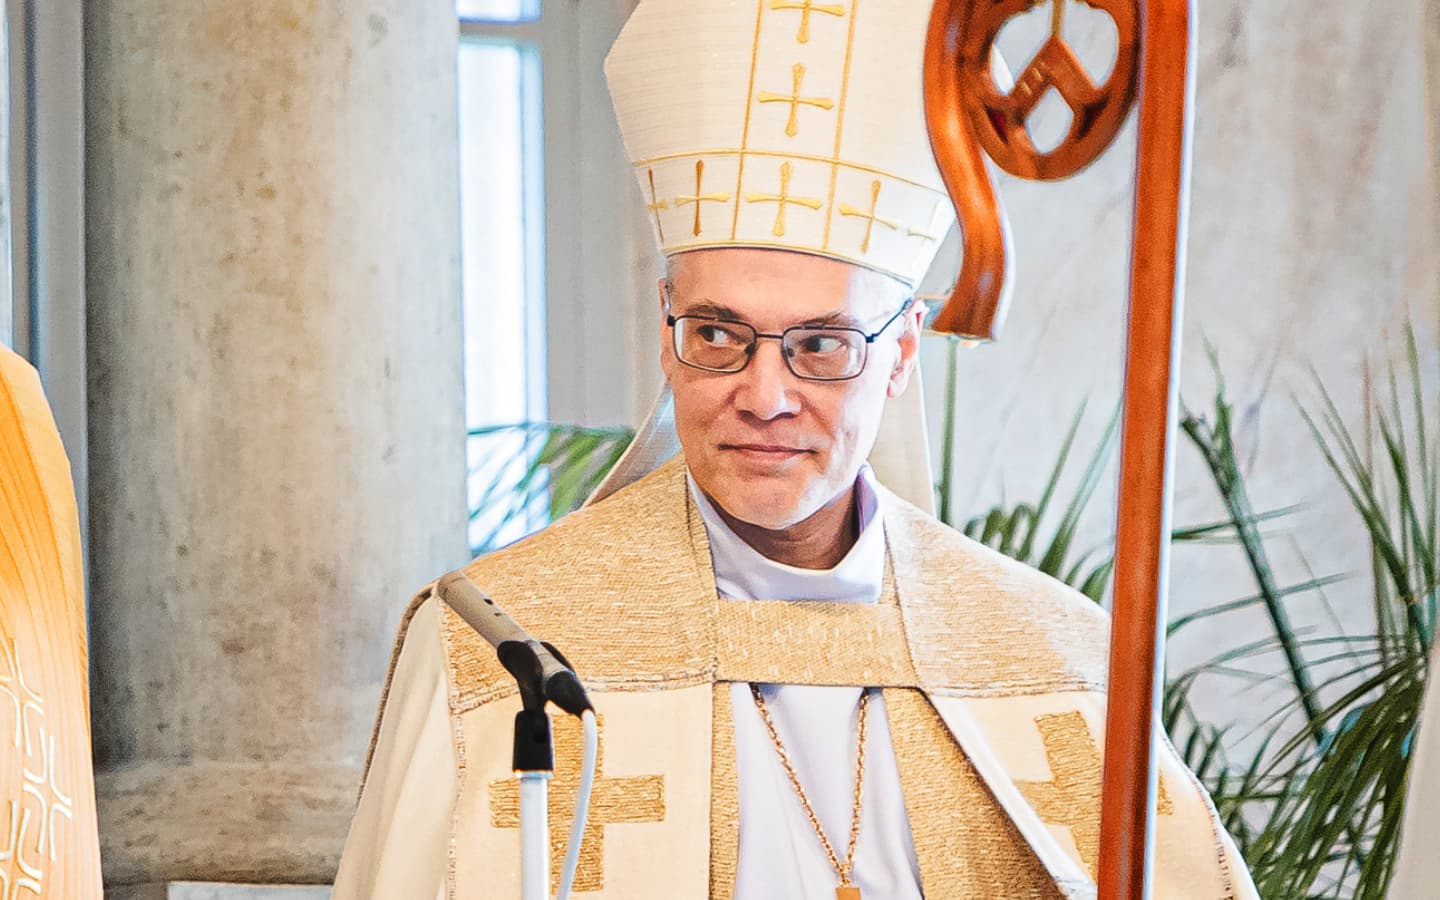 Viljandi Jaani kirikus teise nelipüha, 20. mai keskpäeval toimuval pidulikul jumalateenistusel seatakse piiskop Marko Tiitus ametisse Lõuna-Eesti piiskopkonna p